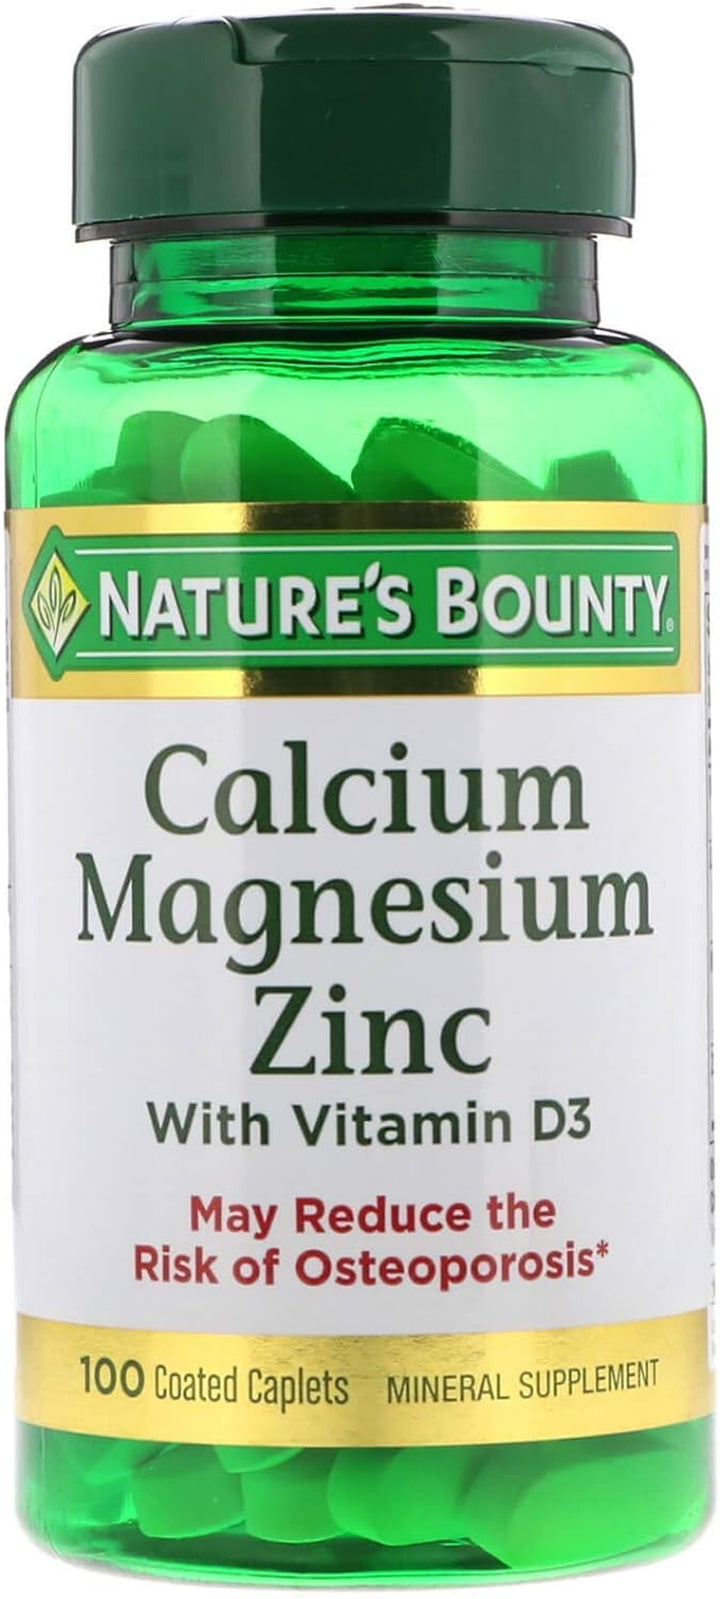 Nature'S Bounty Calcium Magnesium & Zinc Caplets, Immune & Supporting Bone Health, 100 Count